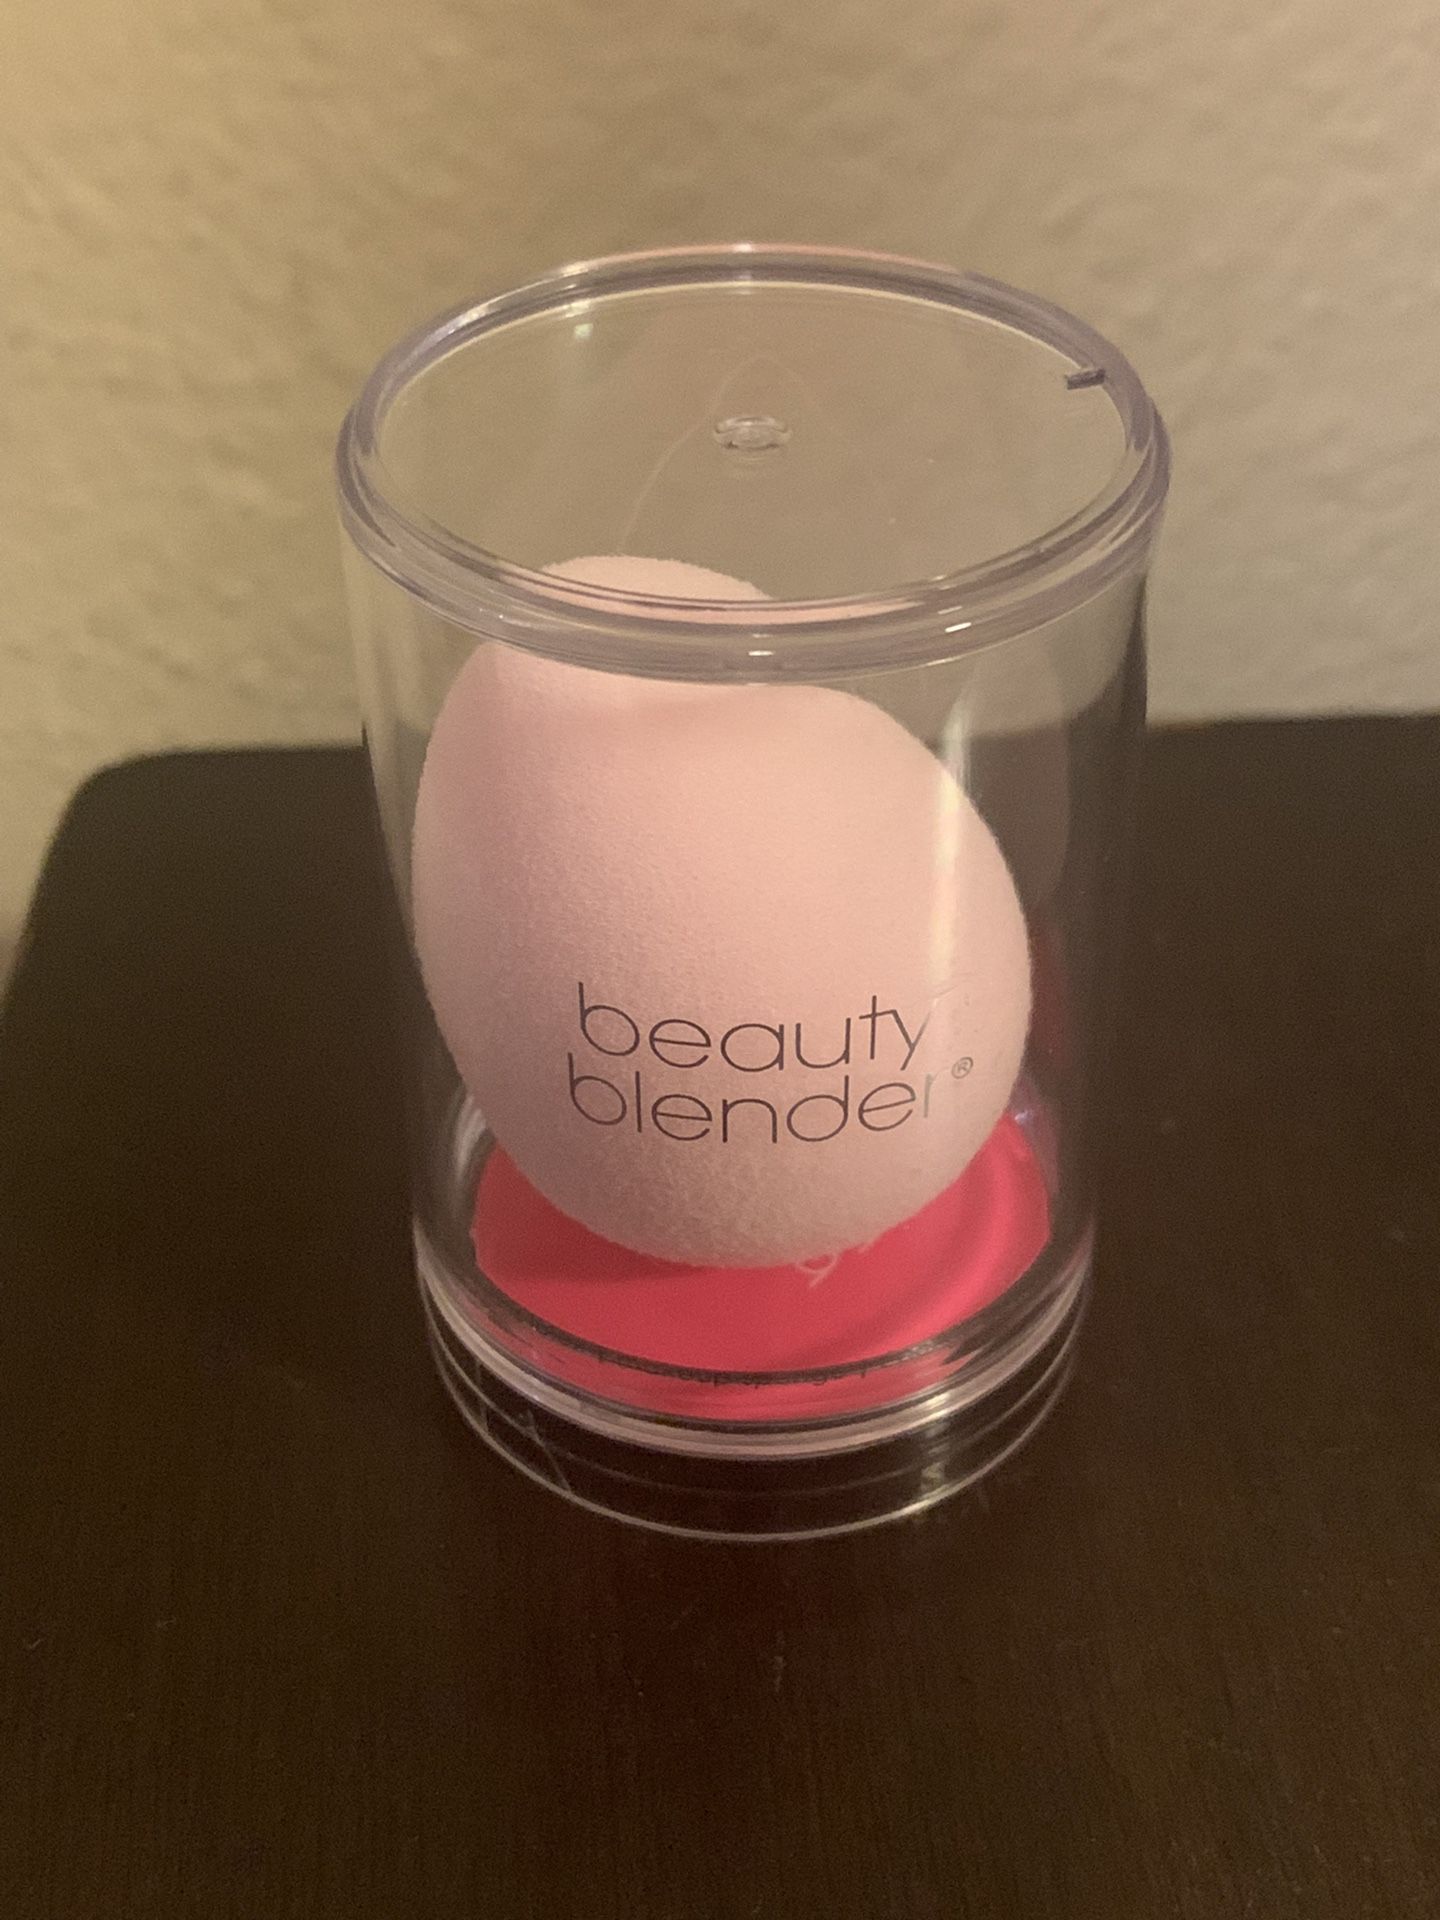 Beauty Blender $15